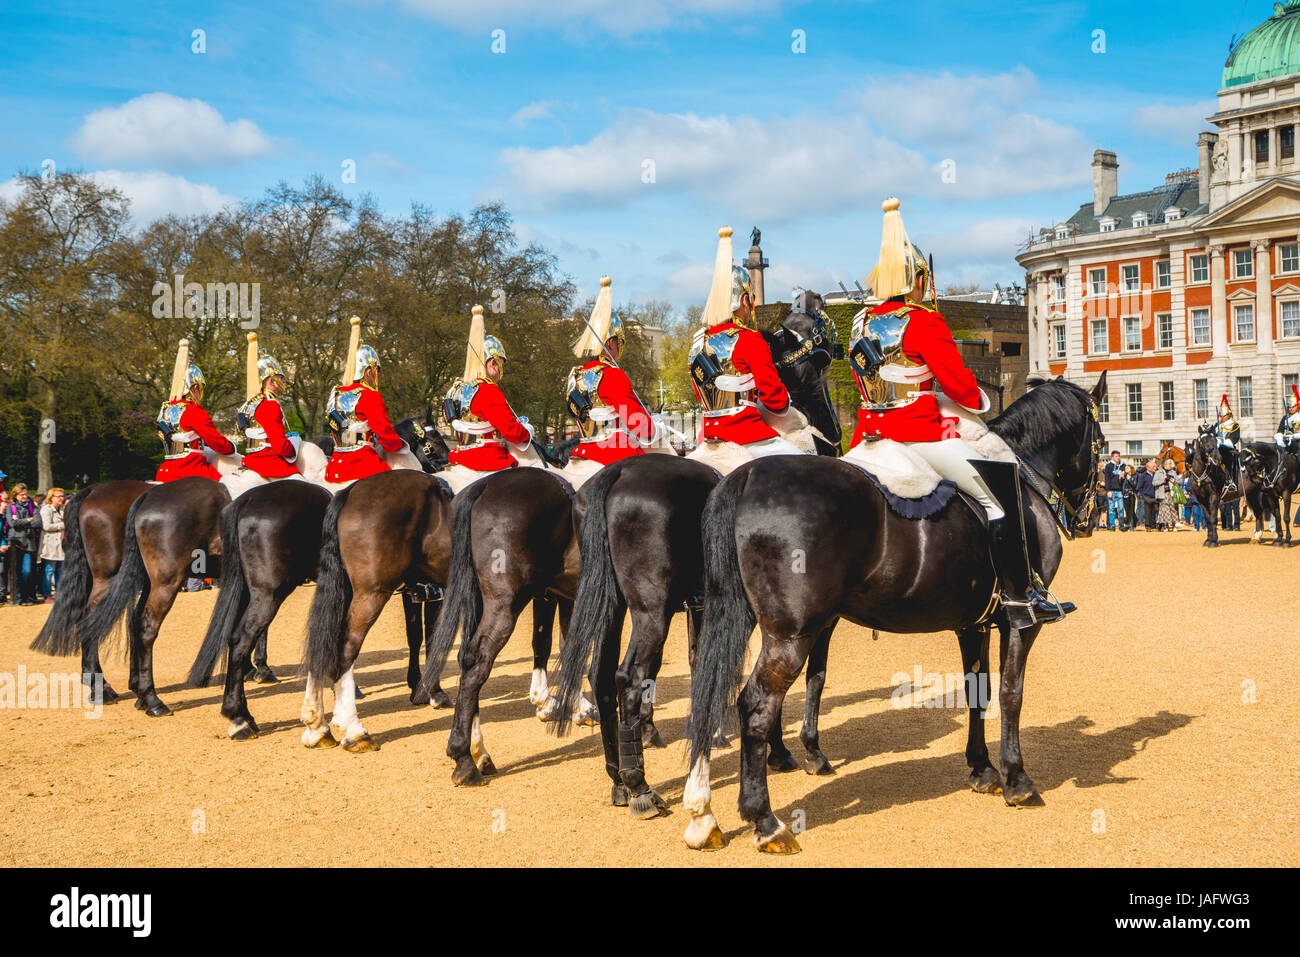 La Garde Royale en uniforme rouge sur les chevaux, les Sauveteurs, Household Cavalry régiment monté, Horse Guards Parade Banque D'Images